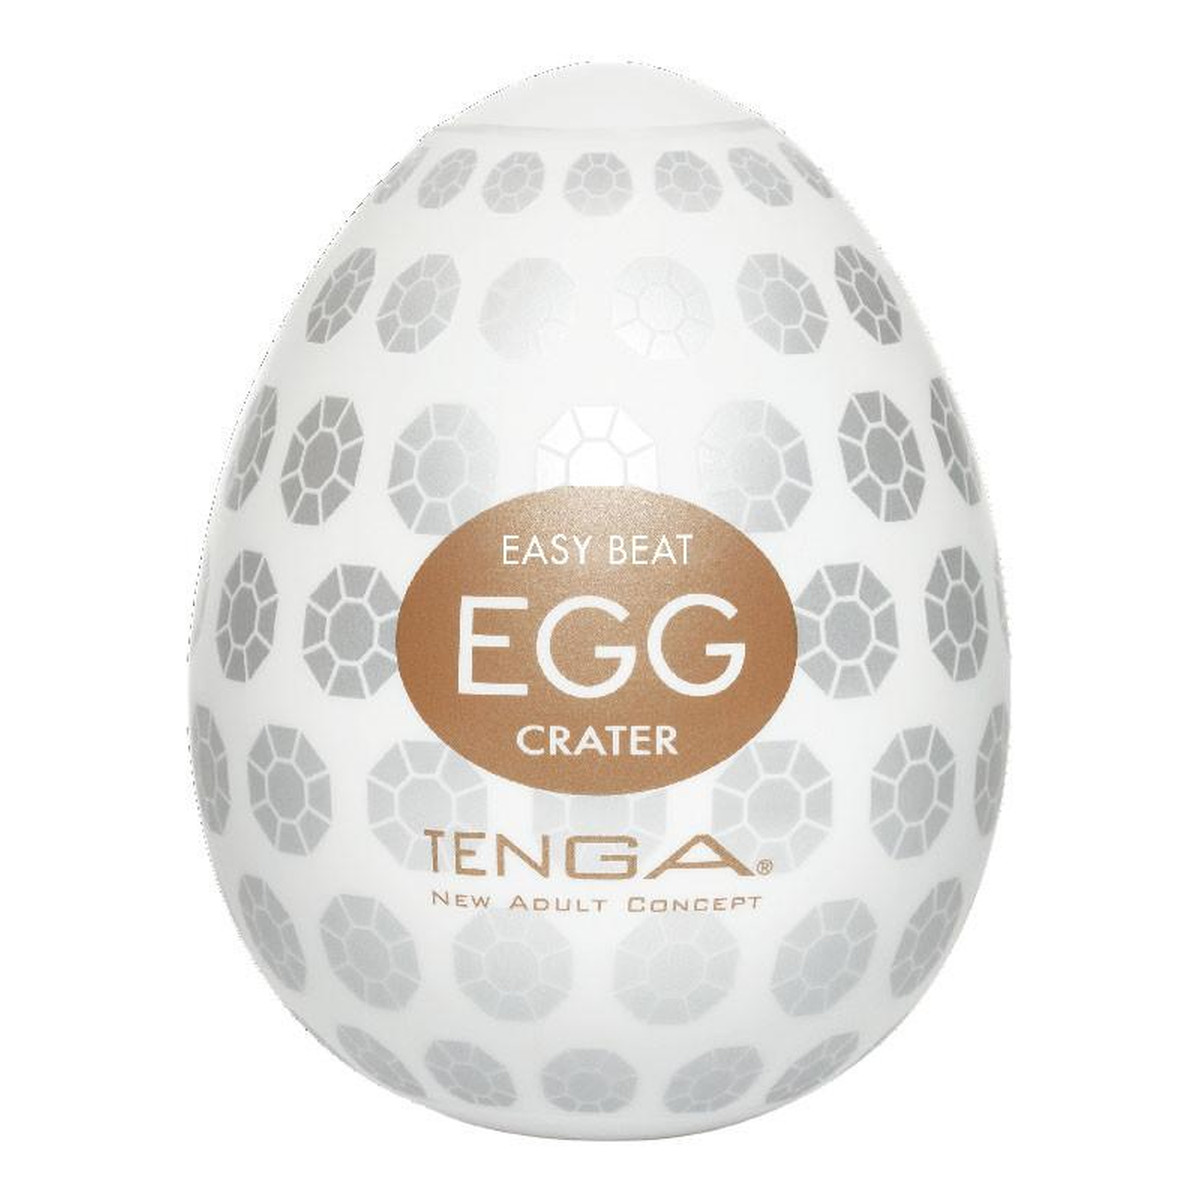 Tenga Easy beat egg crater jednorazowy masturbator w kształcie jajka